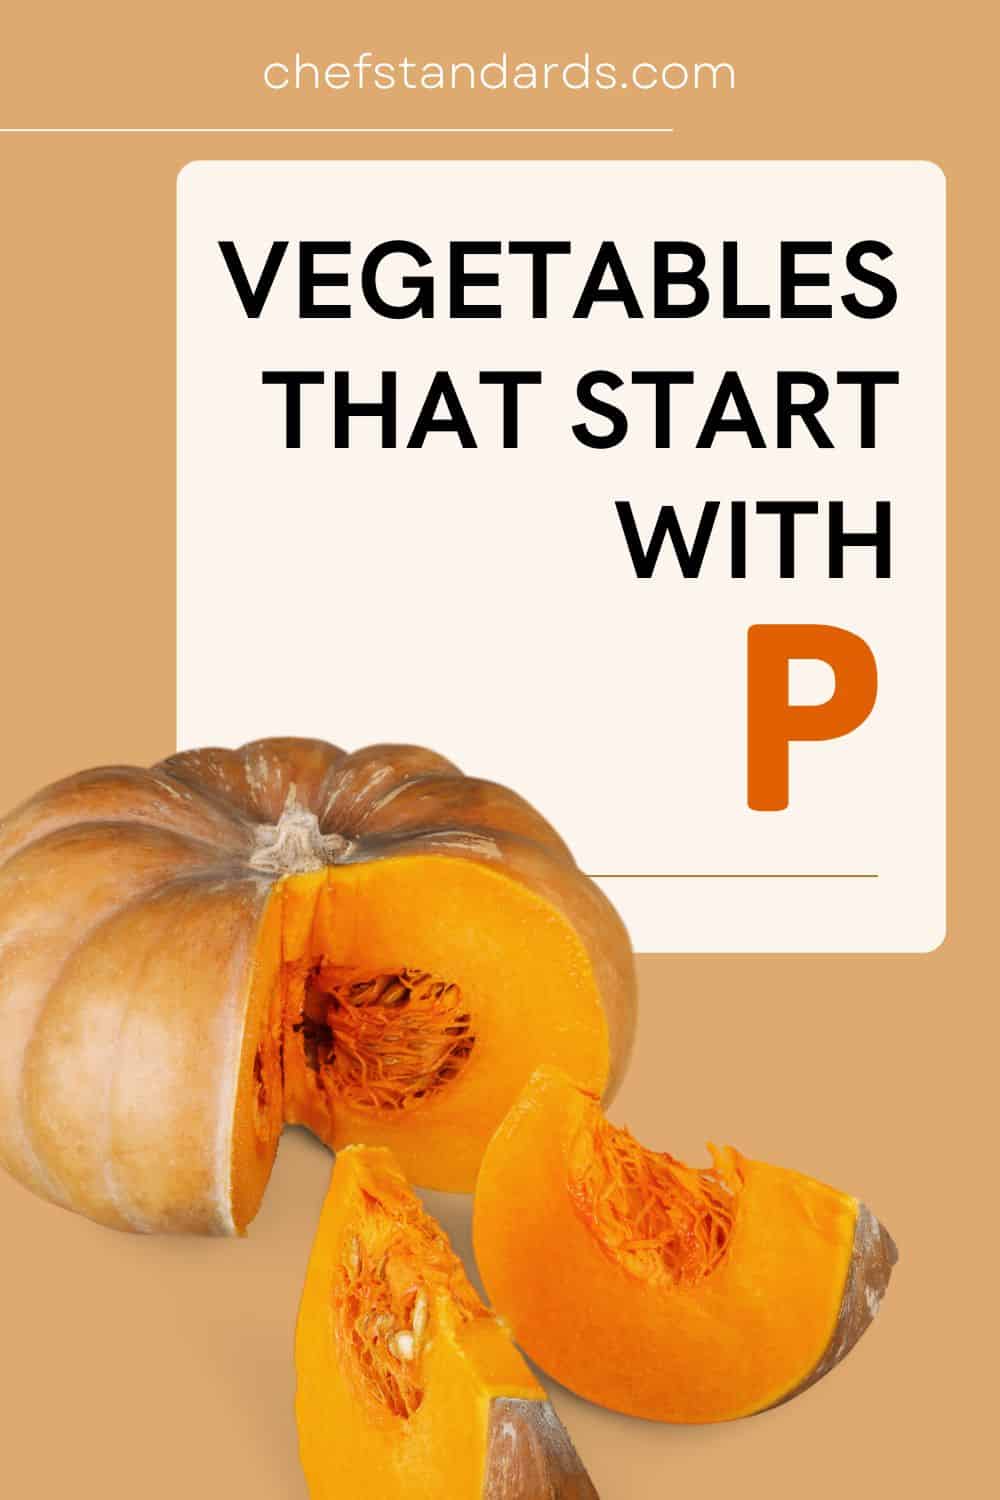 27 verduras que empiezan por P (desde la patata hasta los guisantes)